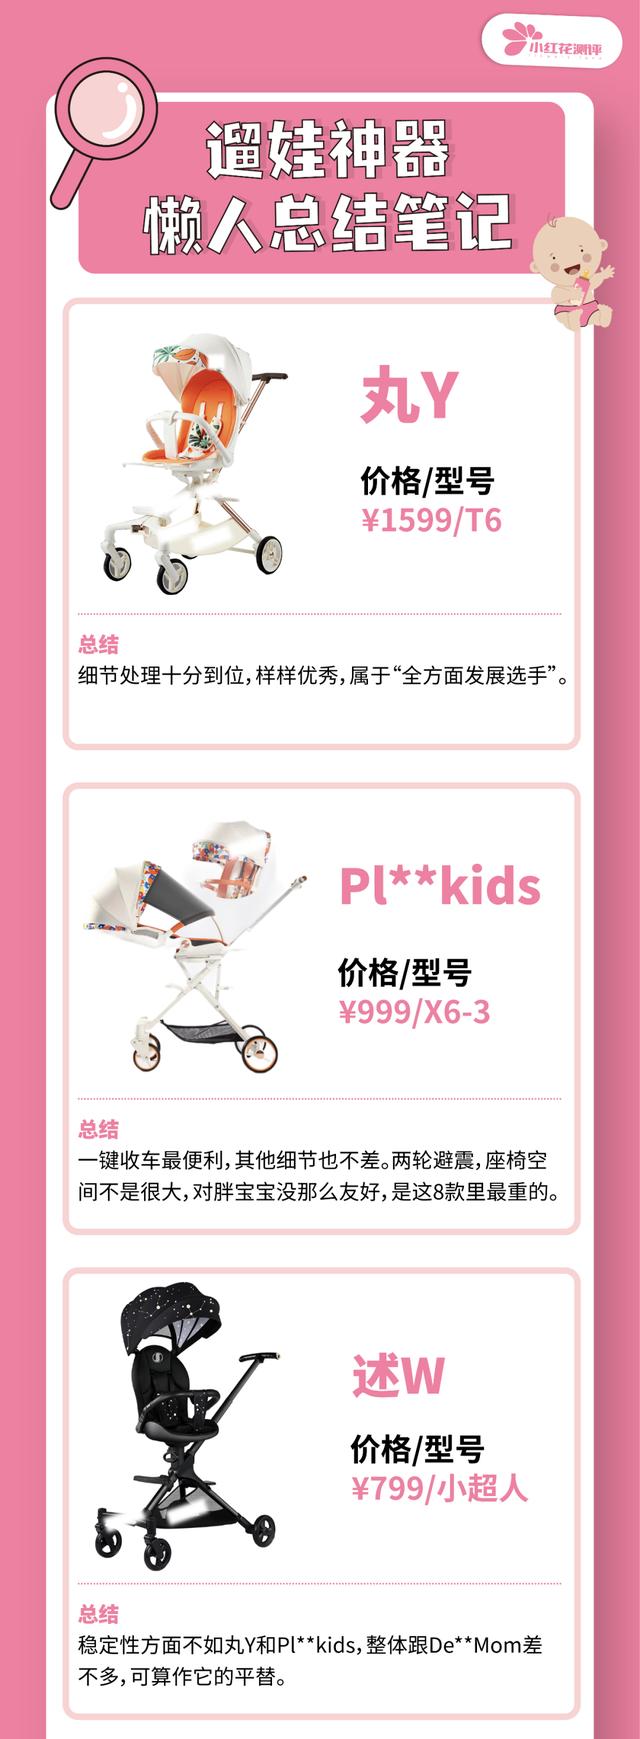 遛娃神器传统婴儿车对比（遛娃神器测评花了近1w样品费）(46)